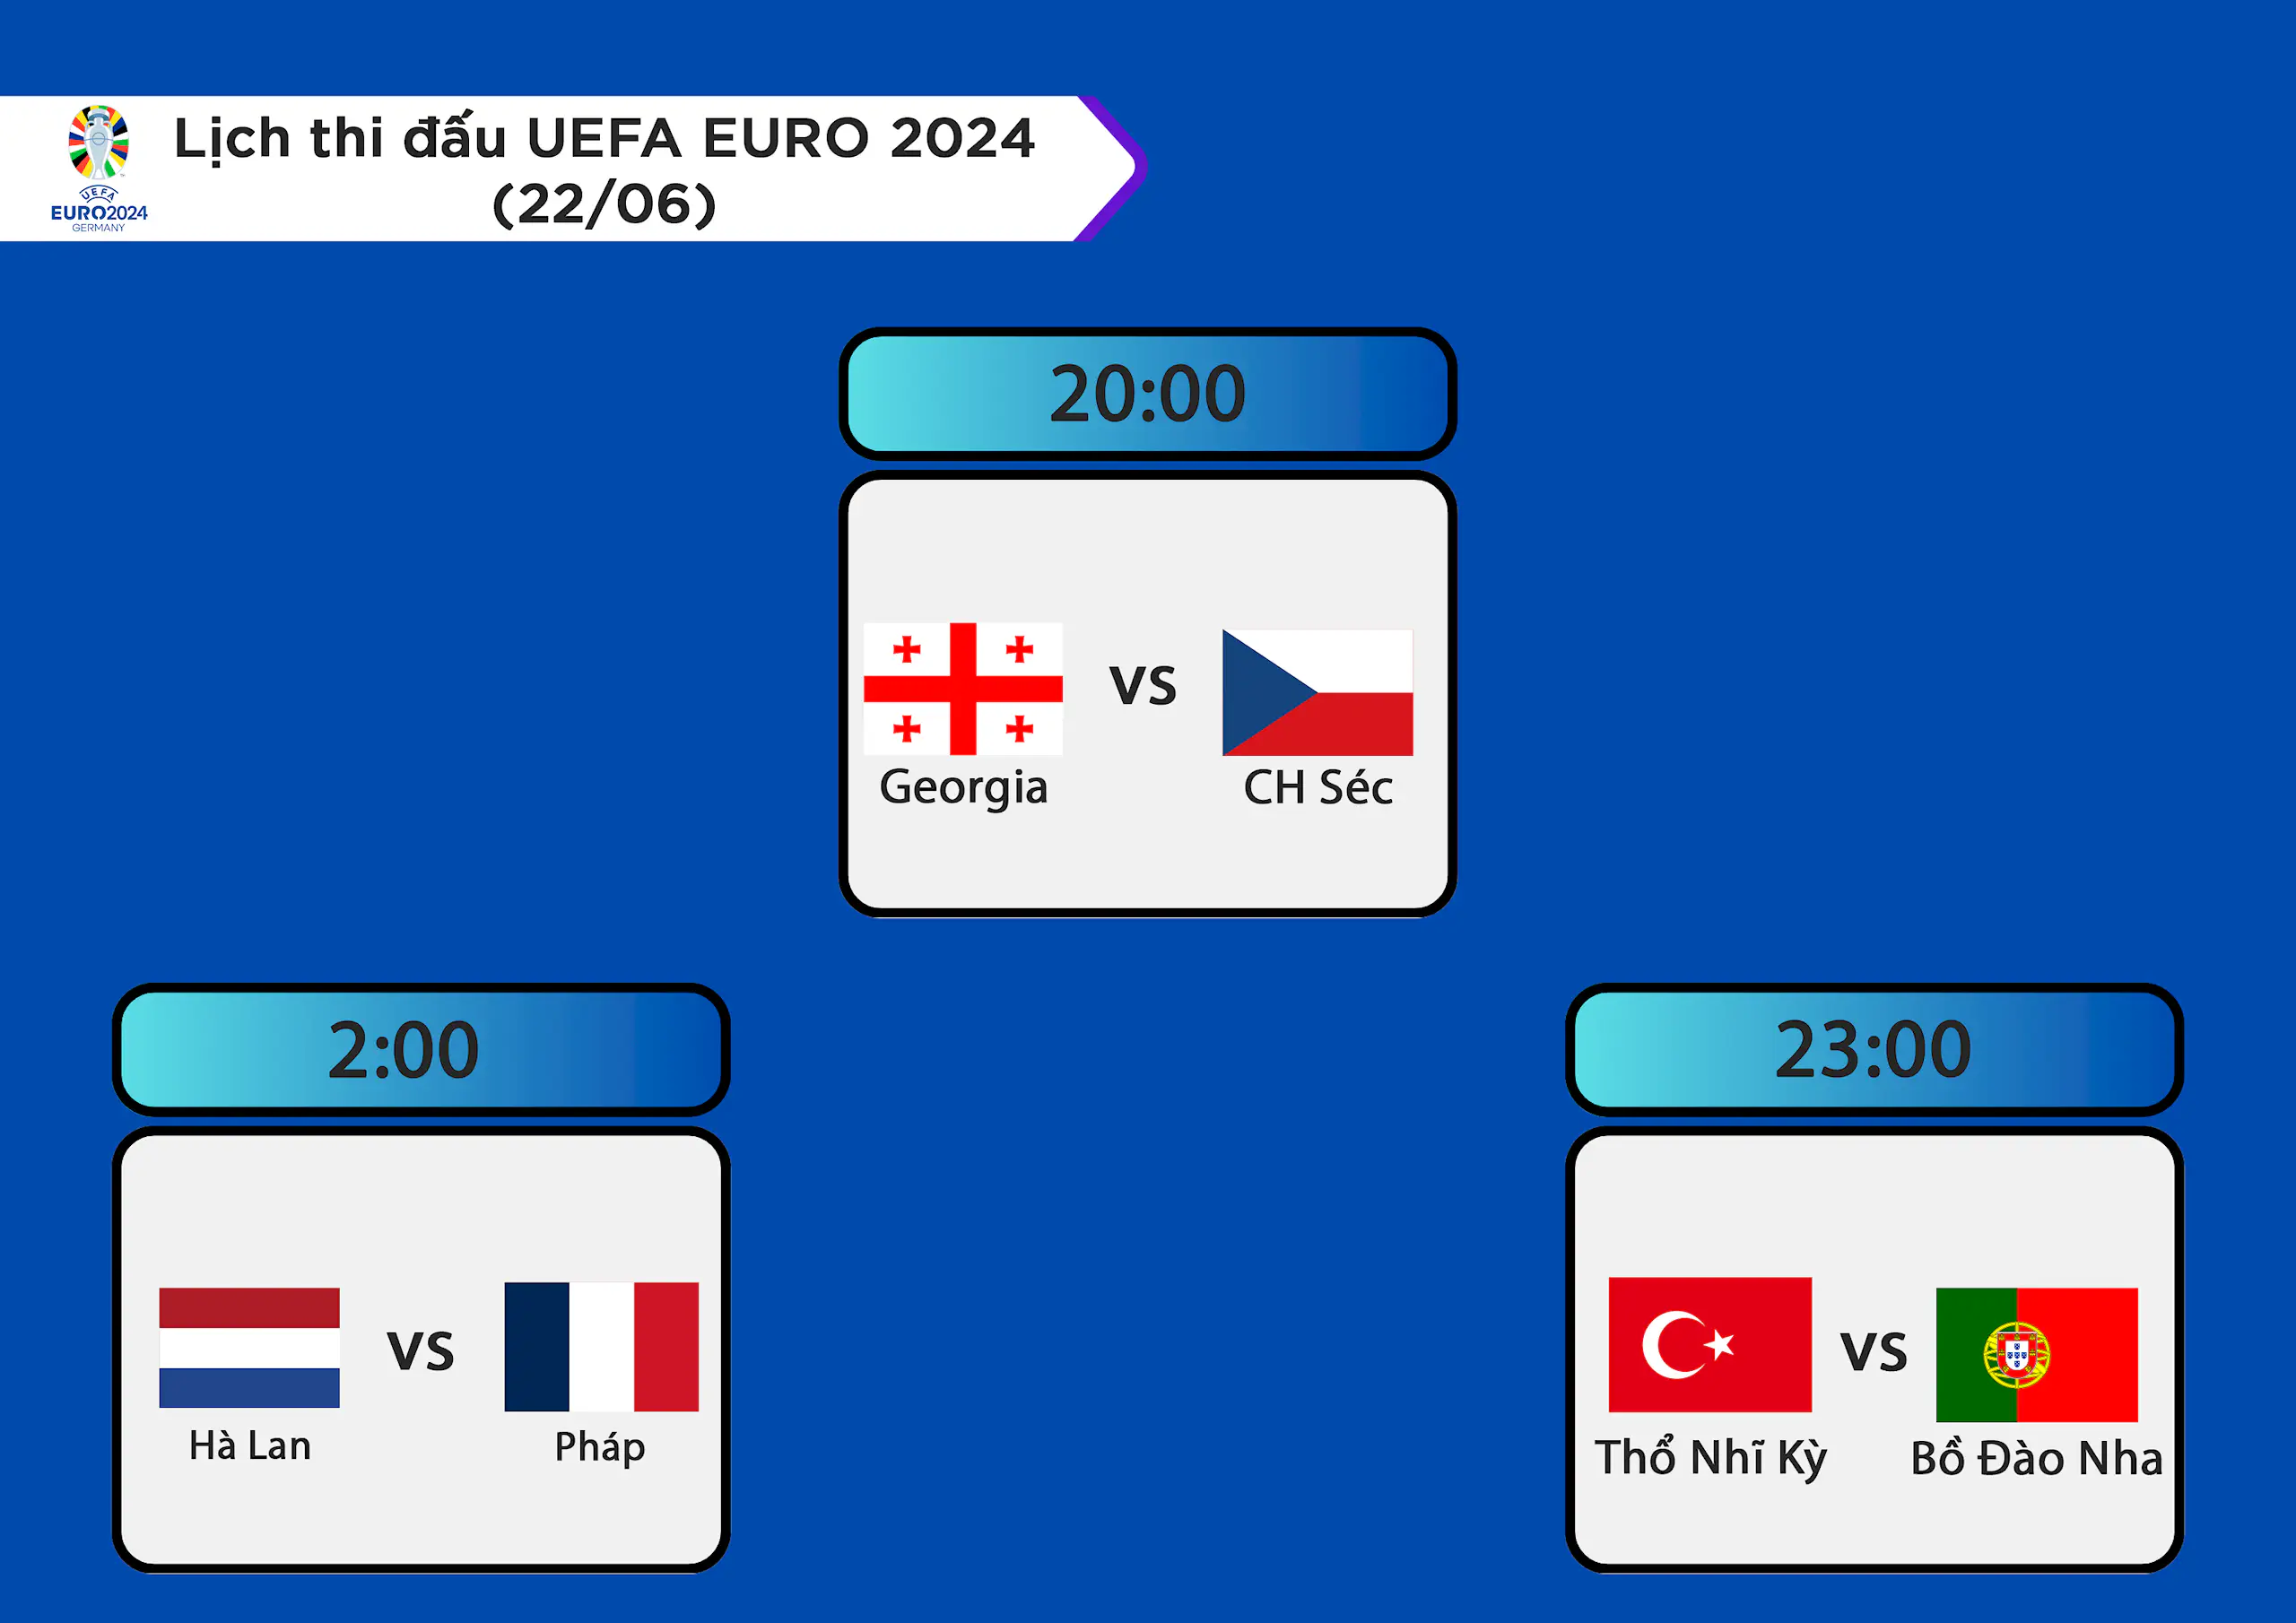 Lịch thi đấu UEFA EURO 2024 ngày 22/06